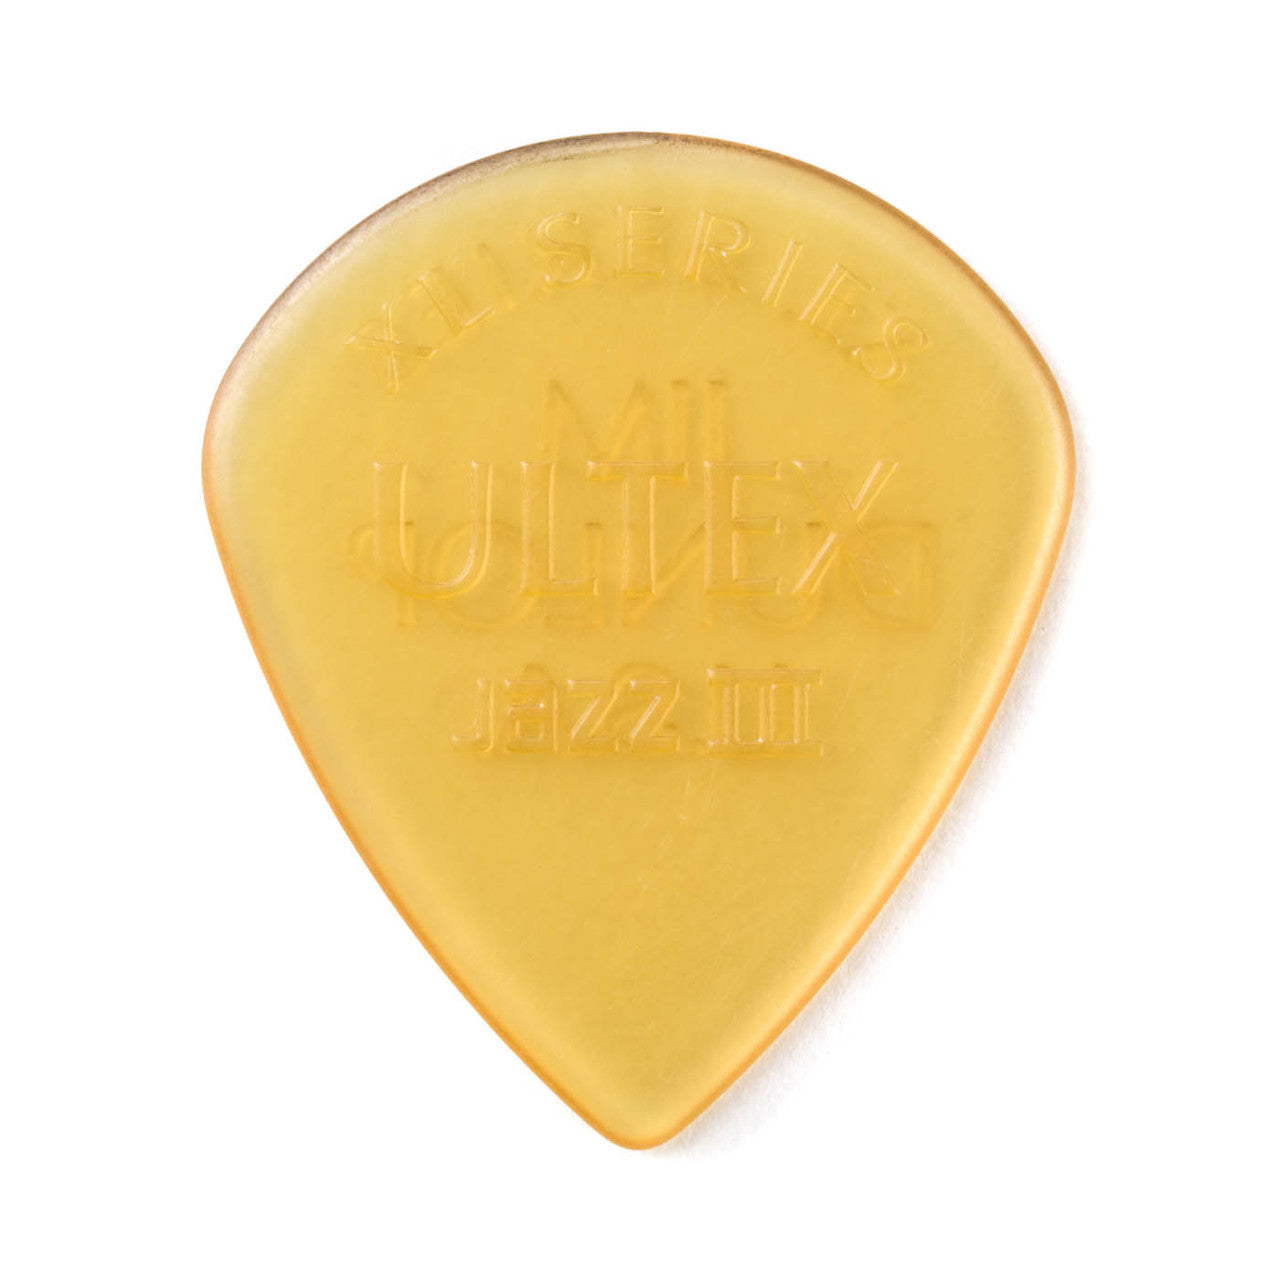 Dunlop Ultex® Jazz III XL Pick 1.38mm Pick